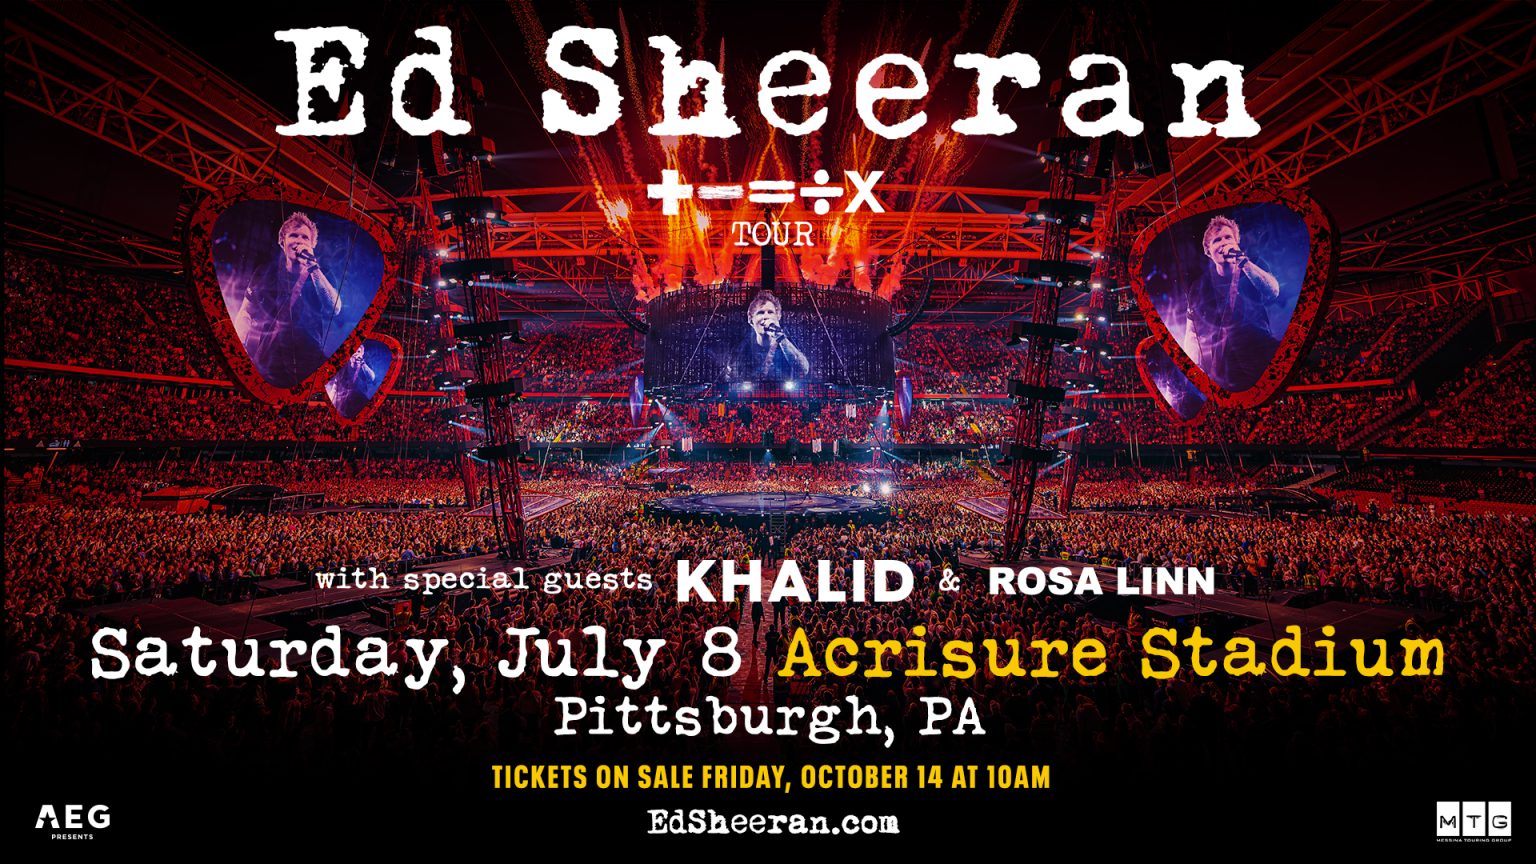 Ed Sheeran's Mathematics Tour 2023 Acrisure Stadium in Pittsburgh, PA